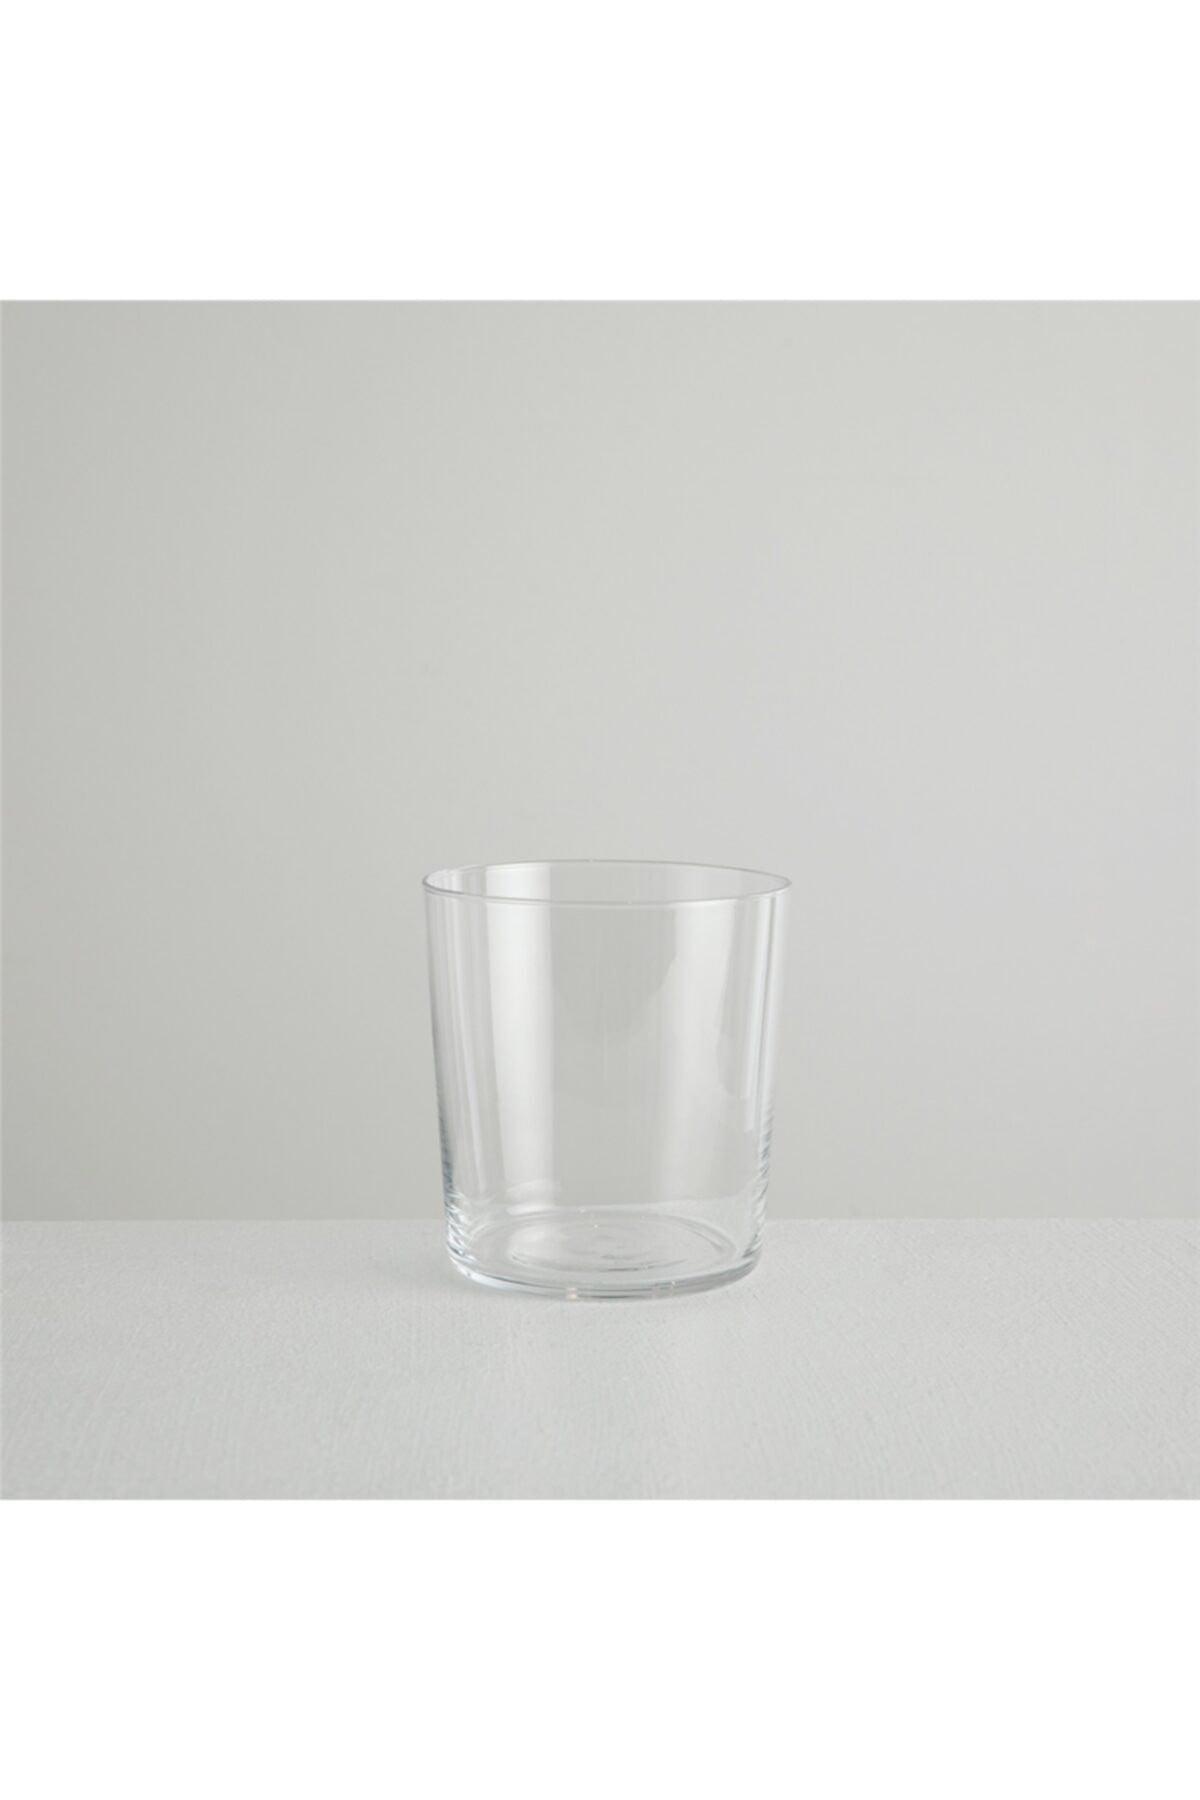 Elysee Water Glass 350 ml Standard - Swordslife